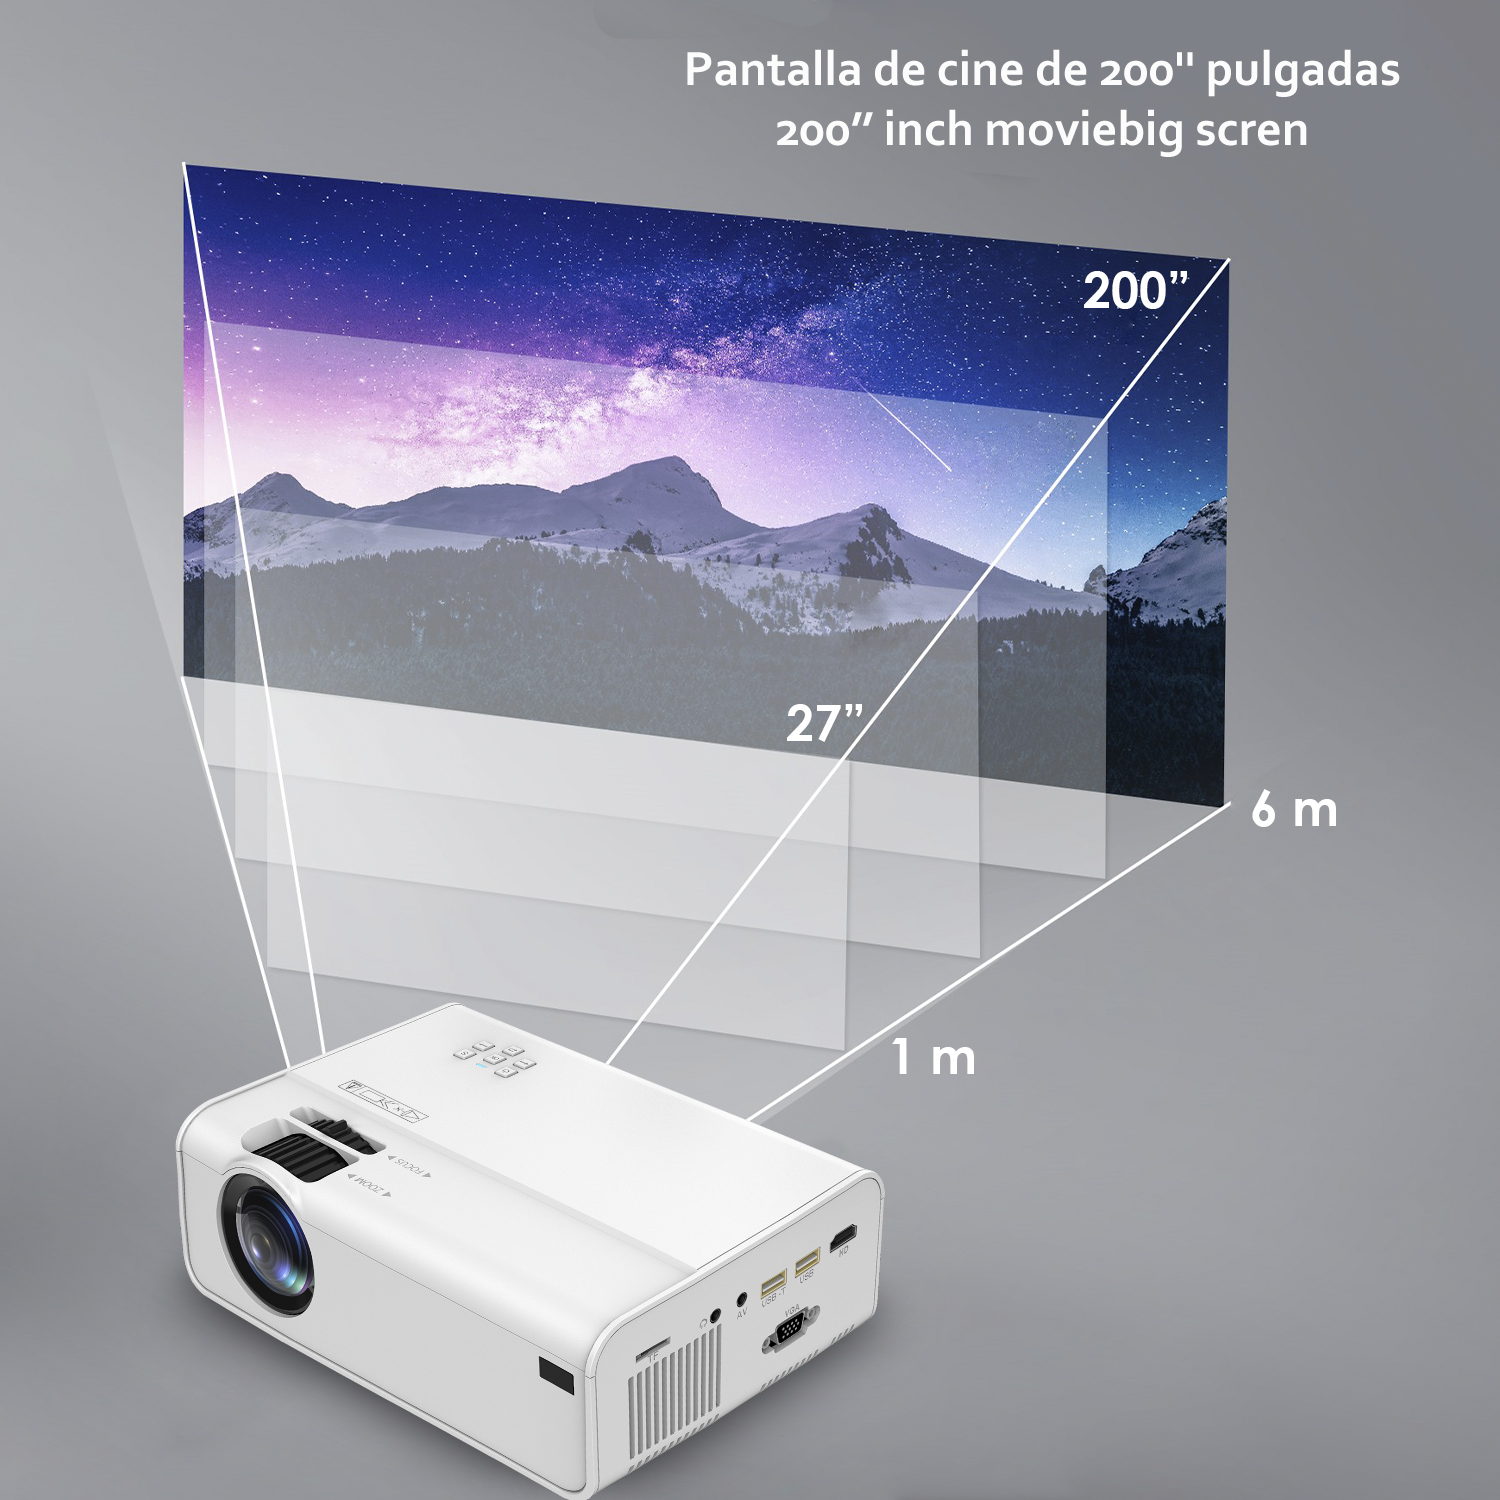 Video proyector LED A13 con Wifi y Android 6.0 incorporado. Full HD1080P, soporta 4K. De 27 a 200 pulgadas, brillo 8000 lm, altavoz incorporado.